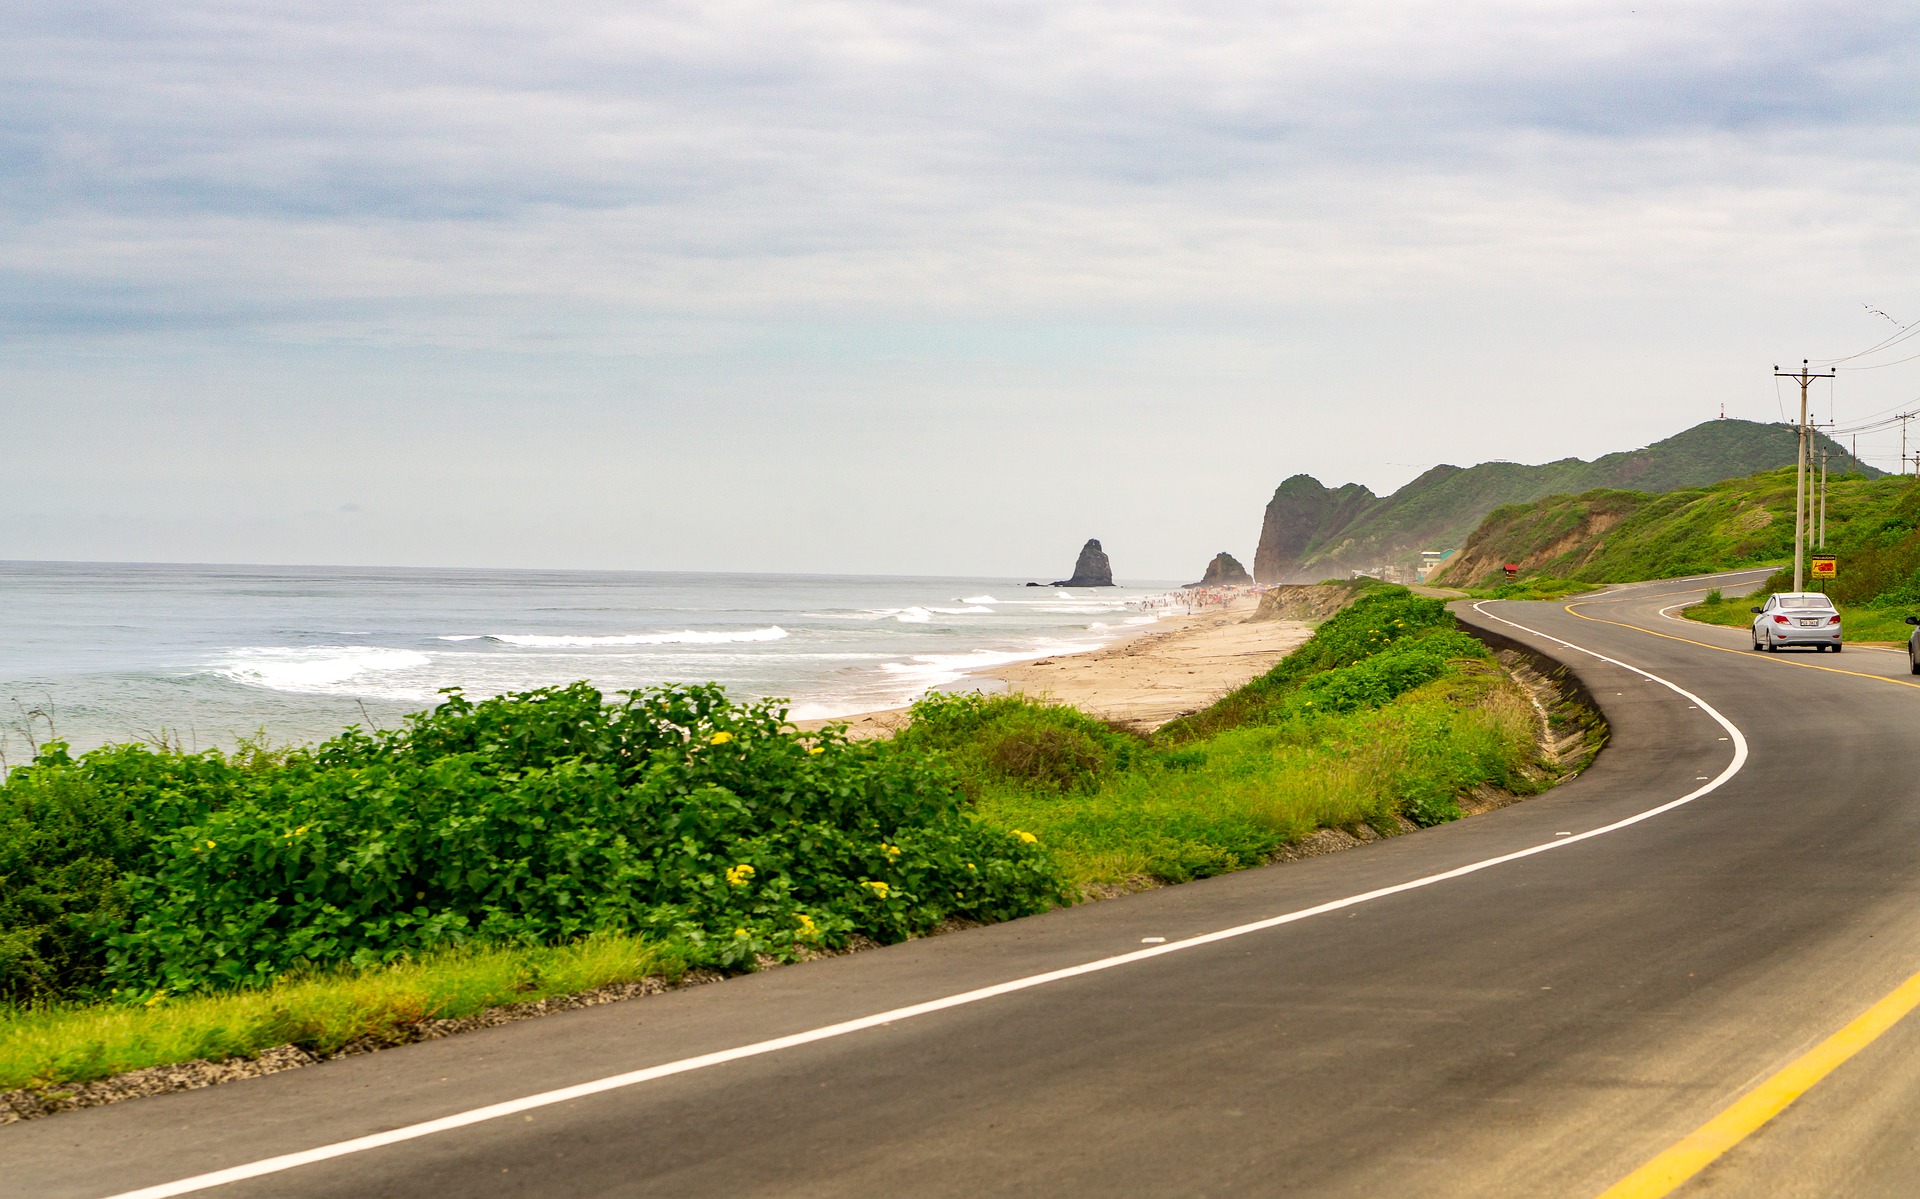 Imagen 3. El mar, la playa y la carretera. Tomada de Gabriel Vera en Pixabay